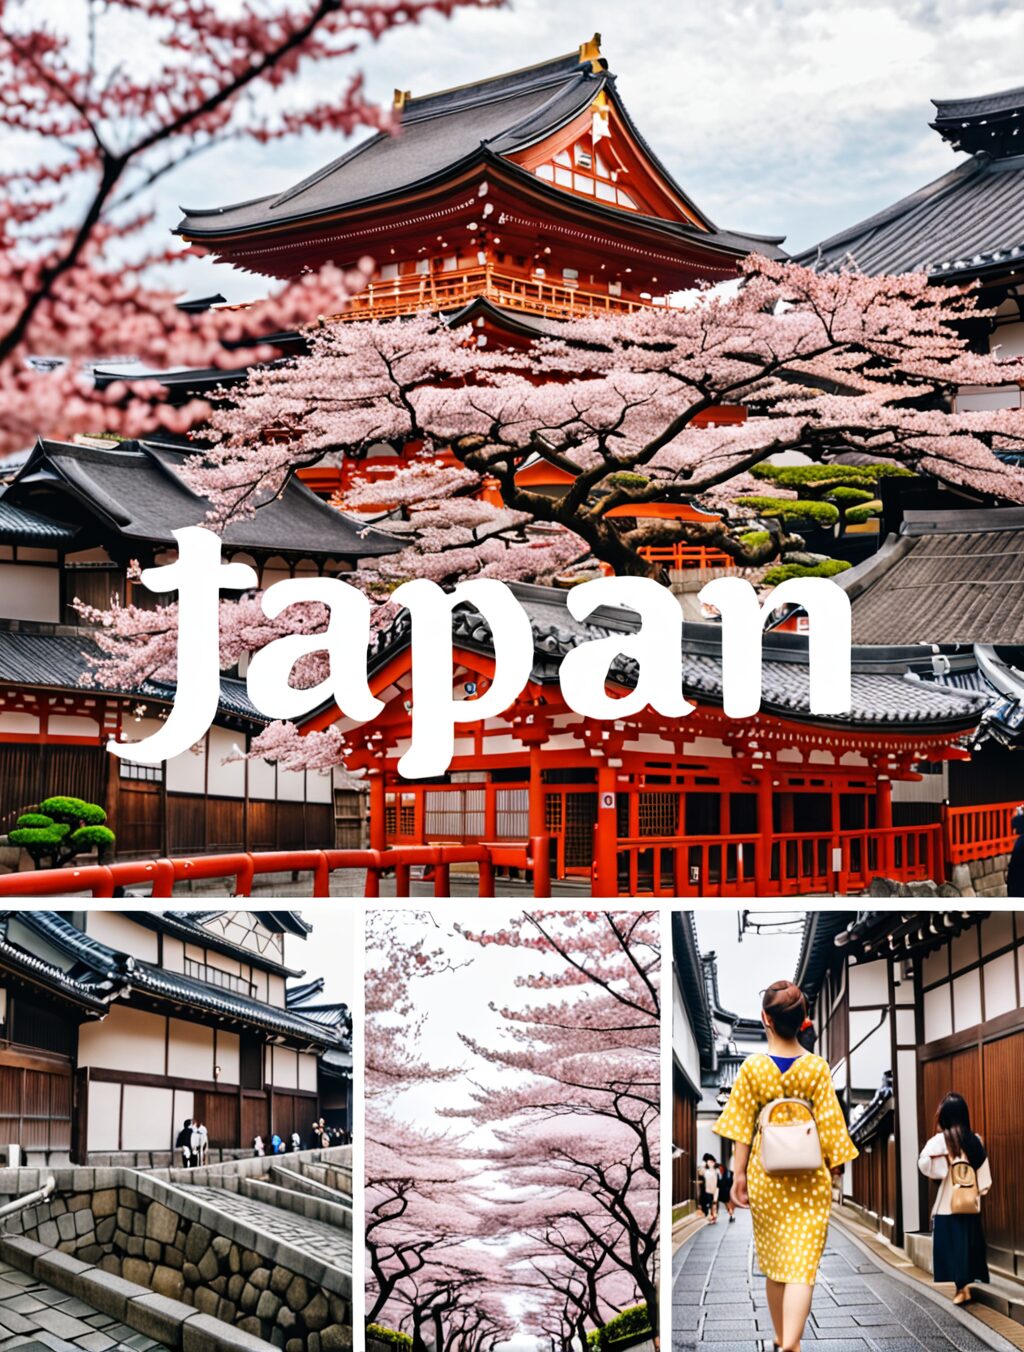 1 week japan itinerary tokyo kyoto osaka